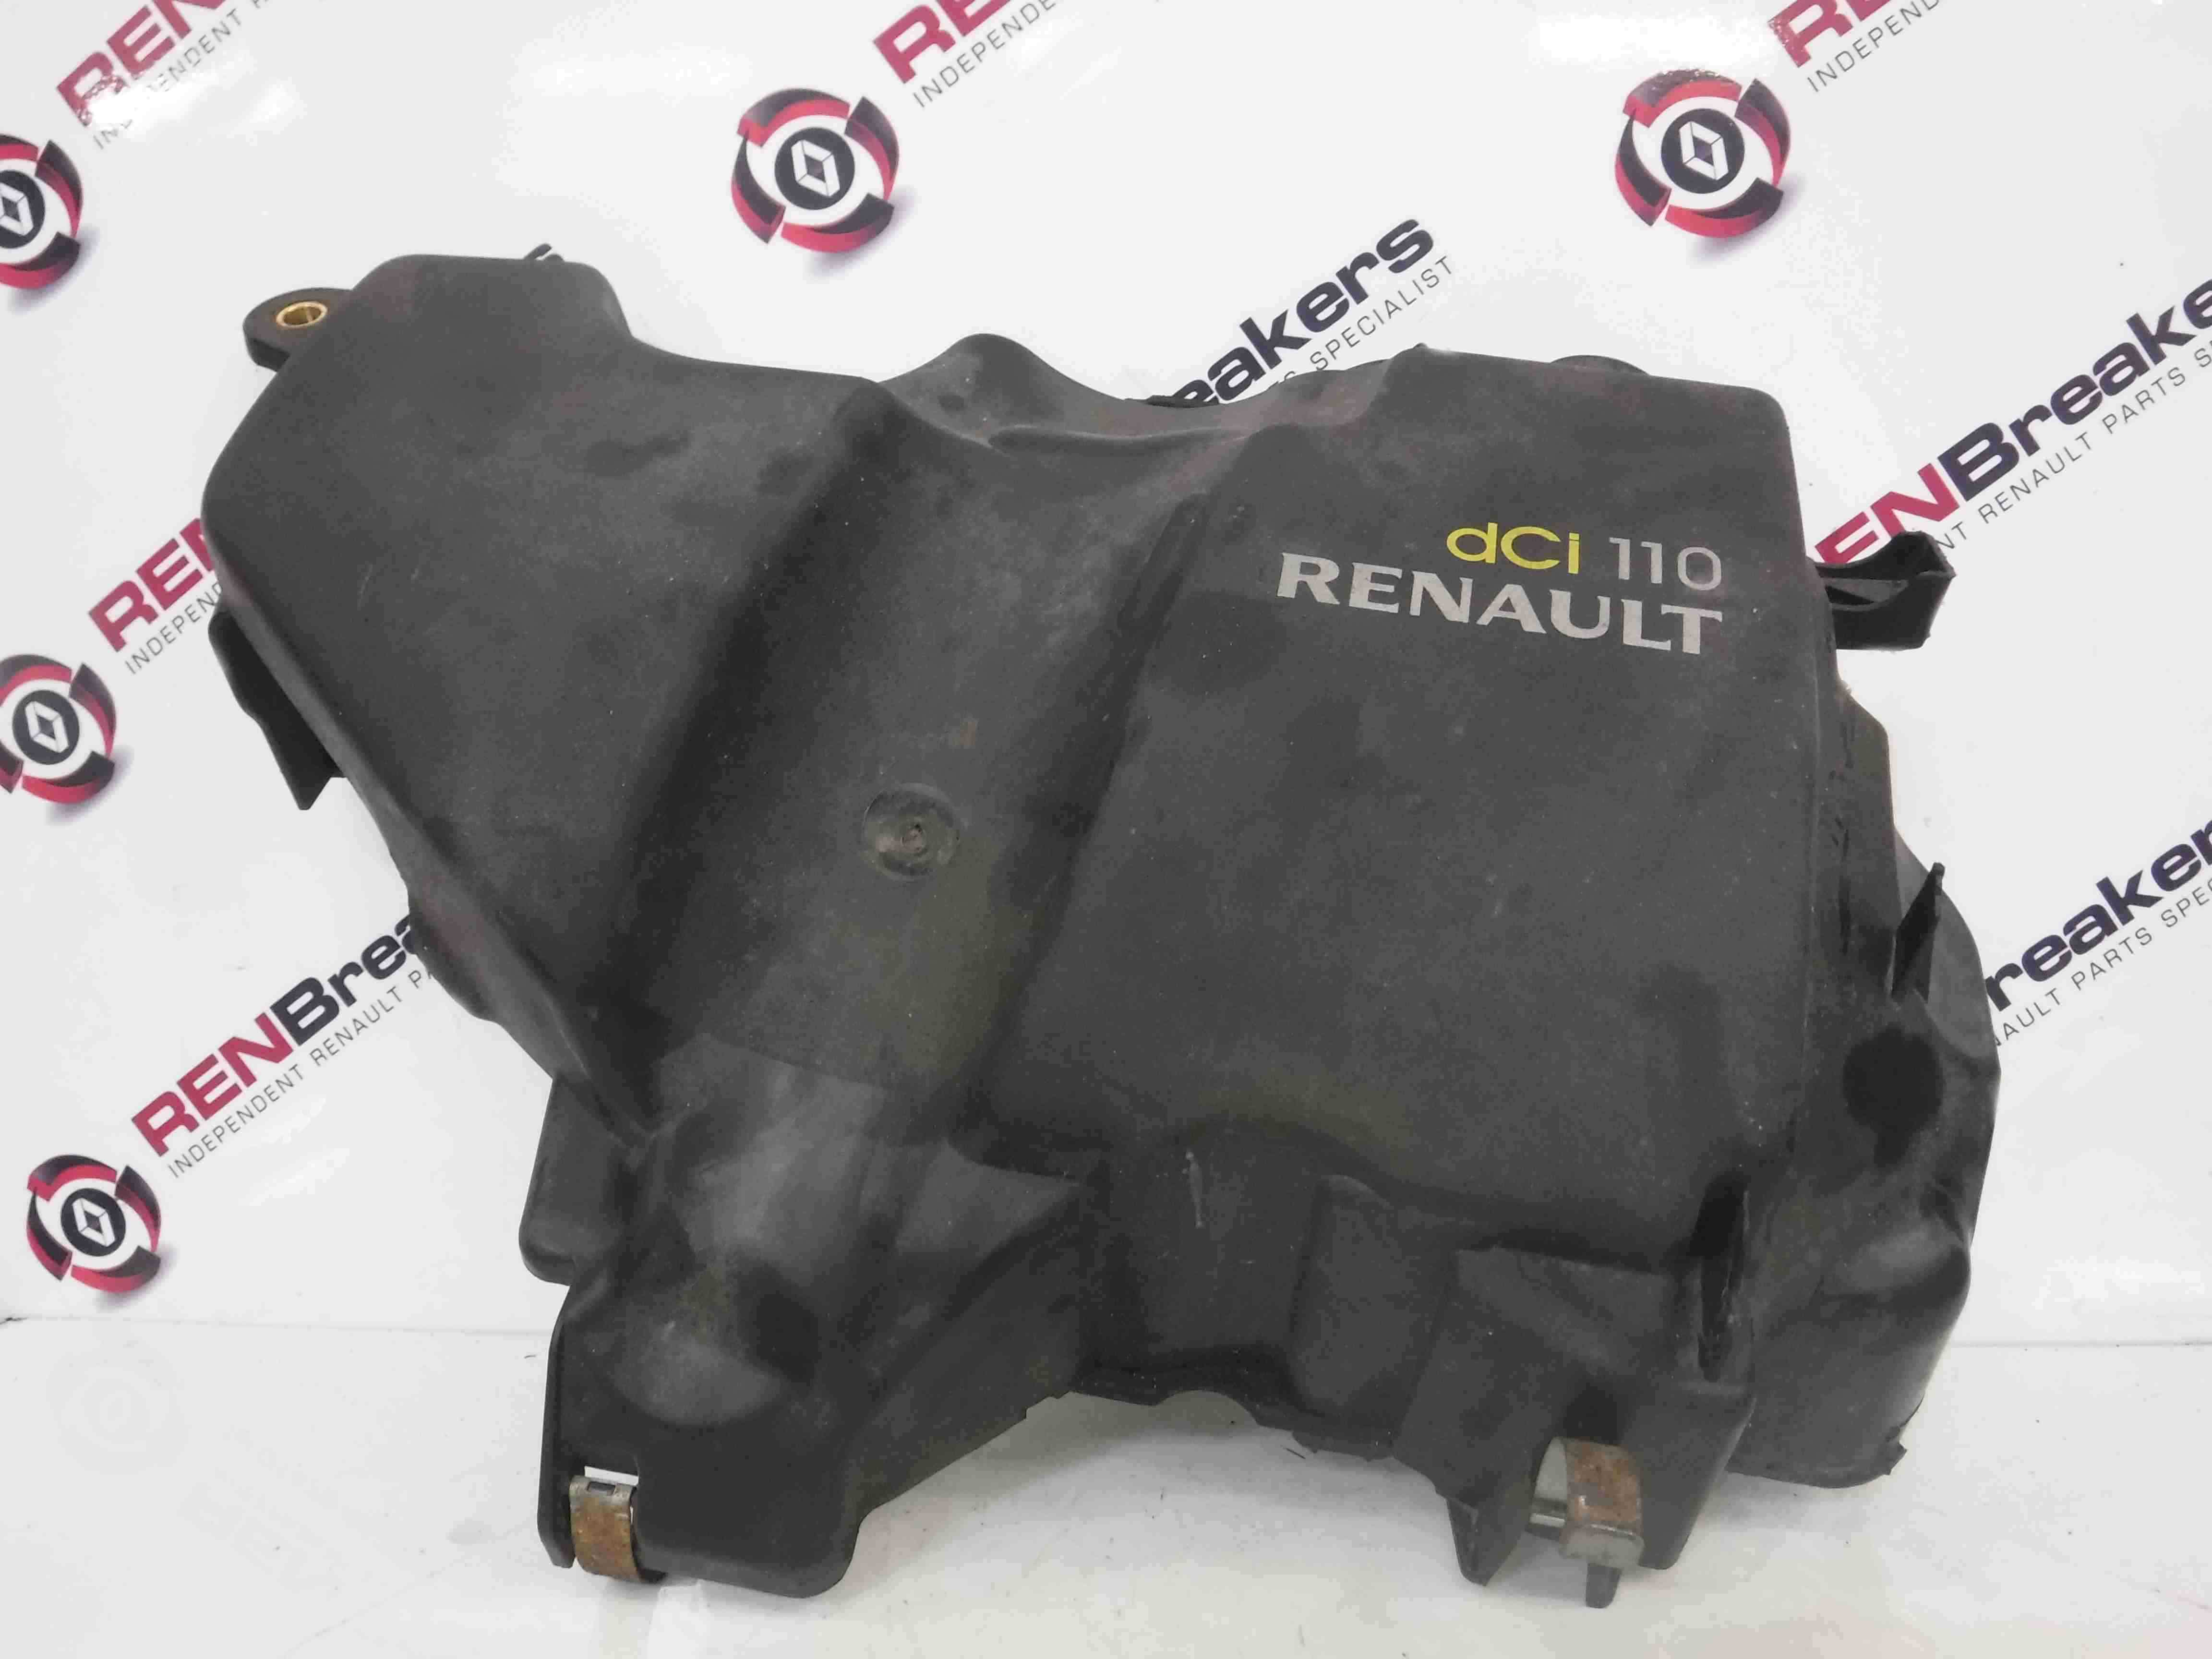 Renault Megane MK3 2008-2014 1.5 dCi Diesel Engine Injector Cover 175B17170R